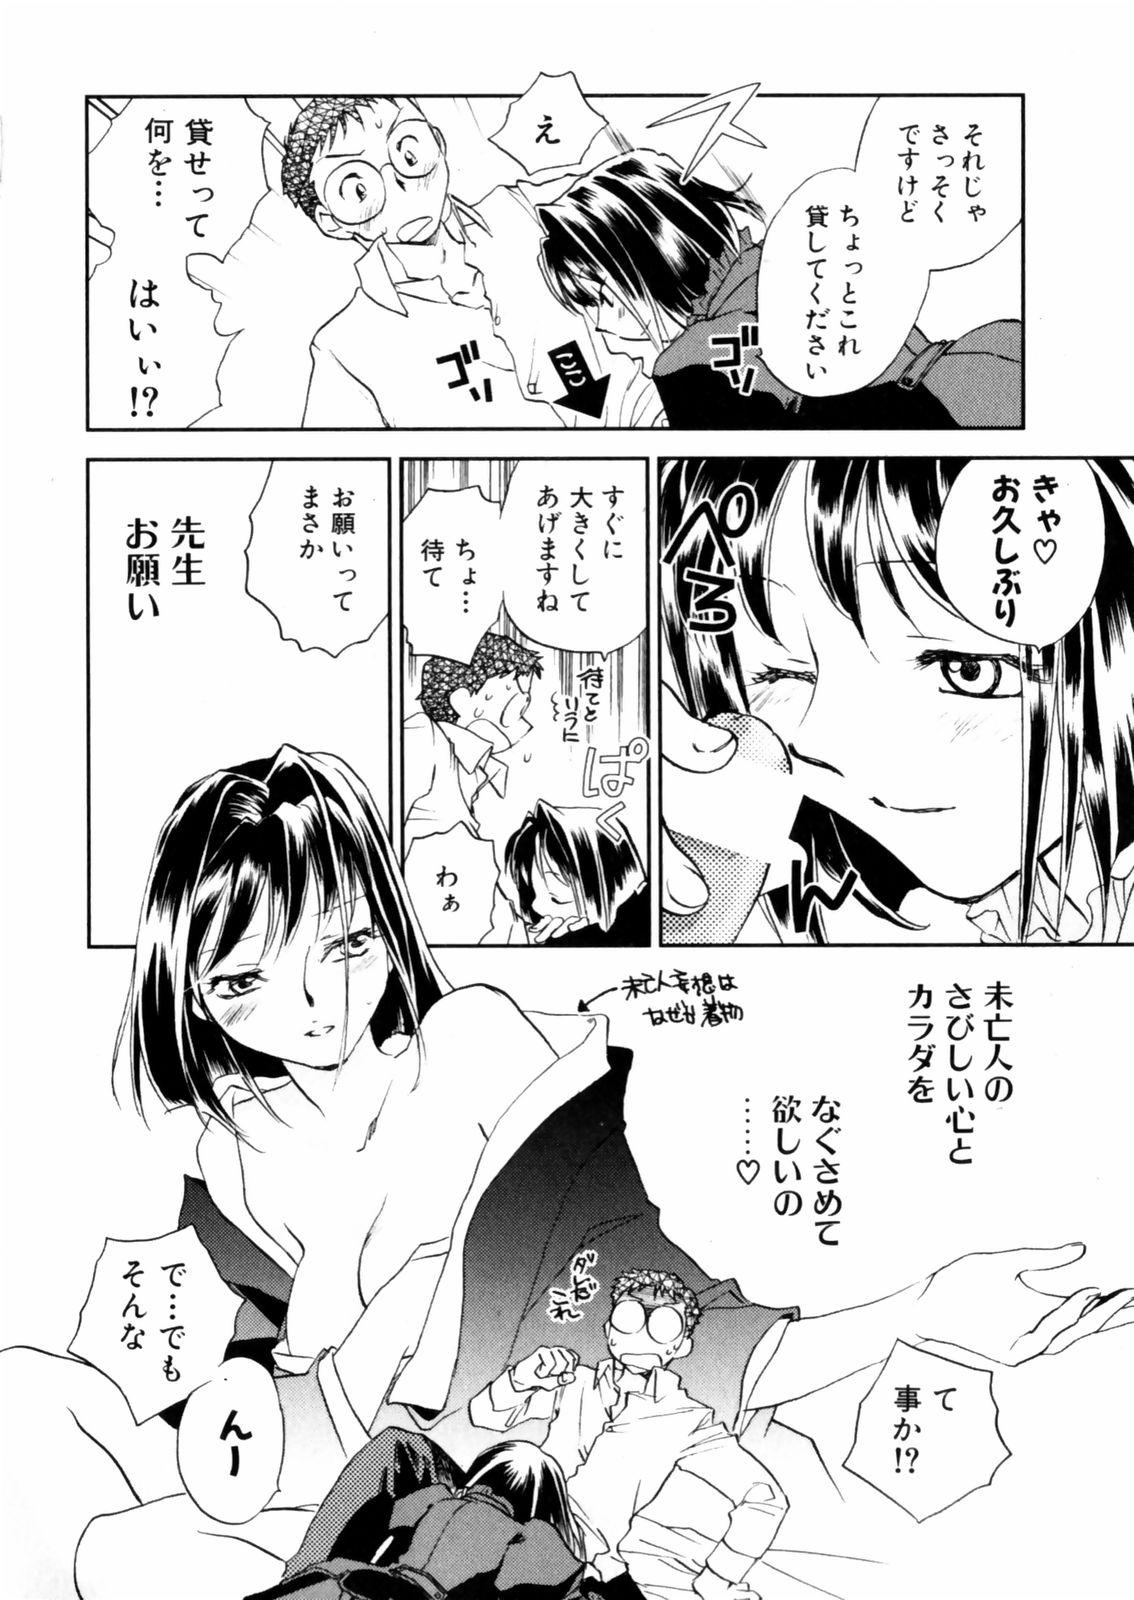 [Okano Ahiru] Hanasake ! Otome Juku (Otome Private Tutoring School) Vol.2 47